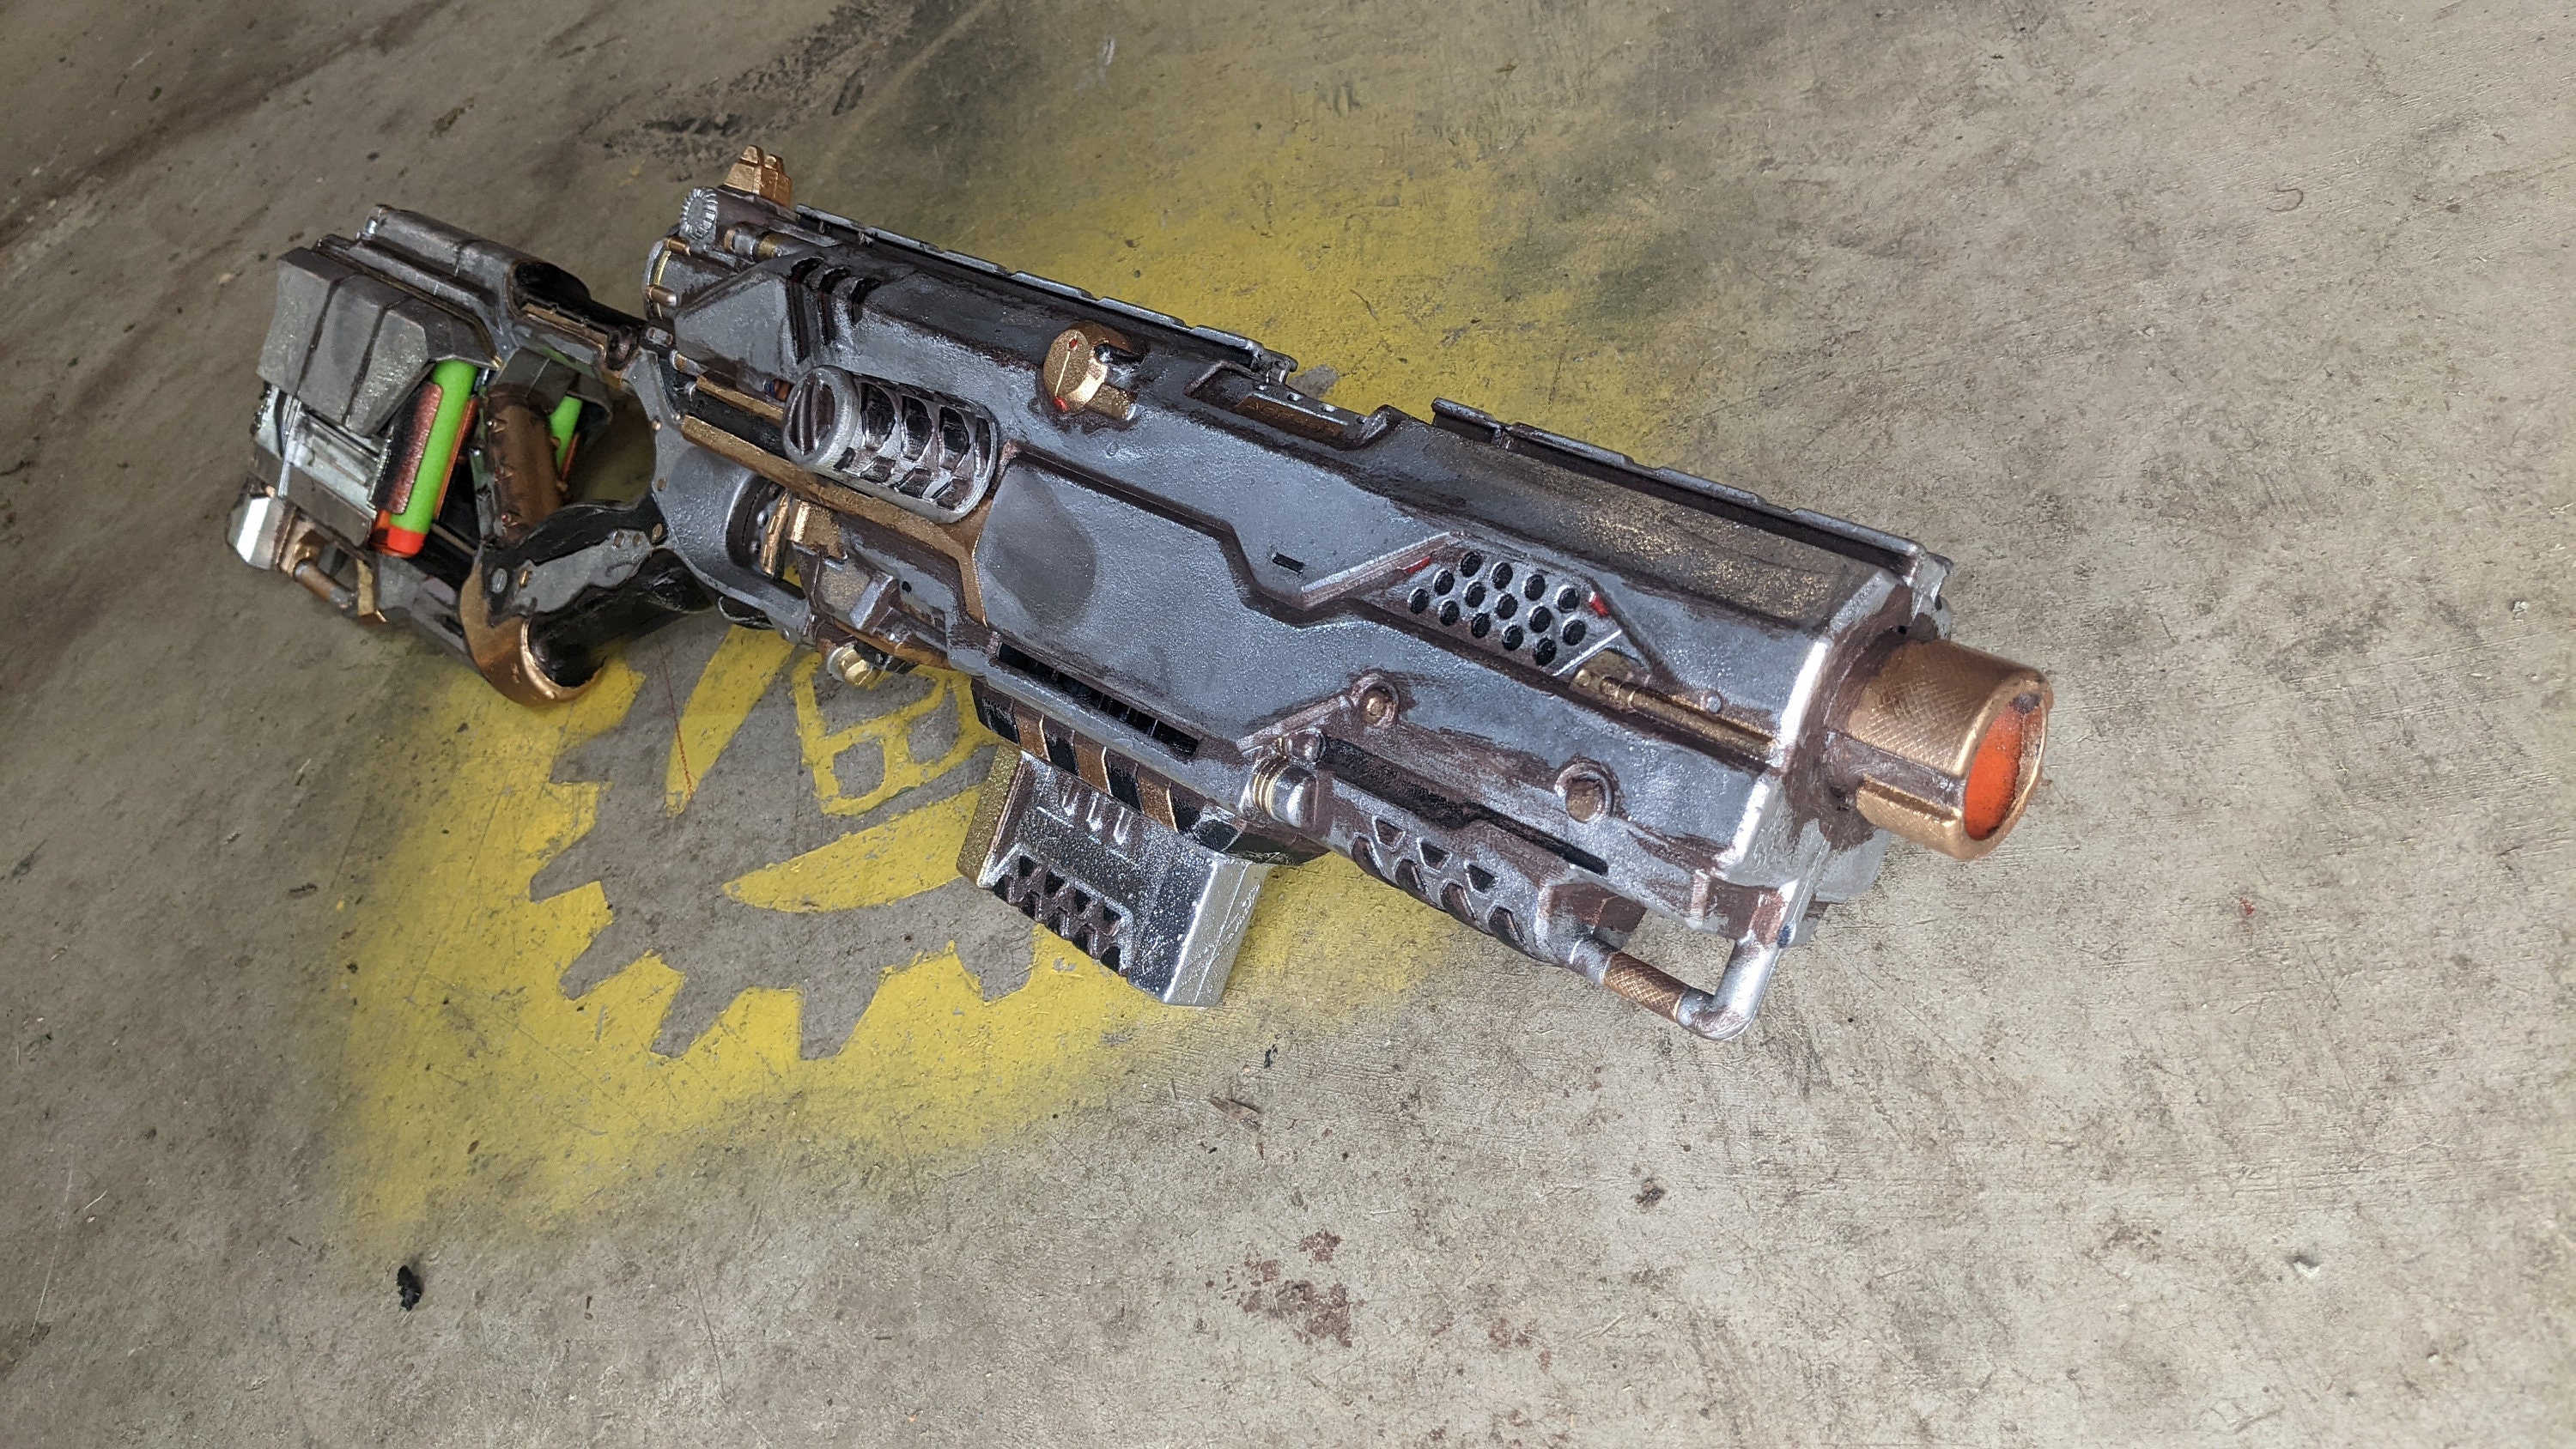 Pick up the impressive Nerf Longstrike Modulus Blaster for just